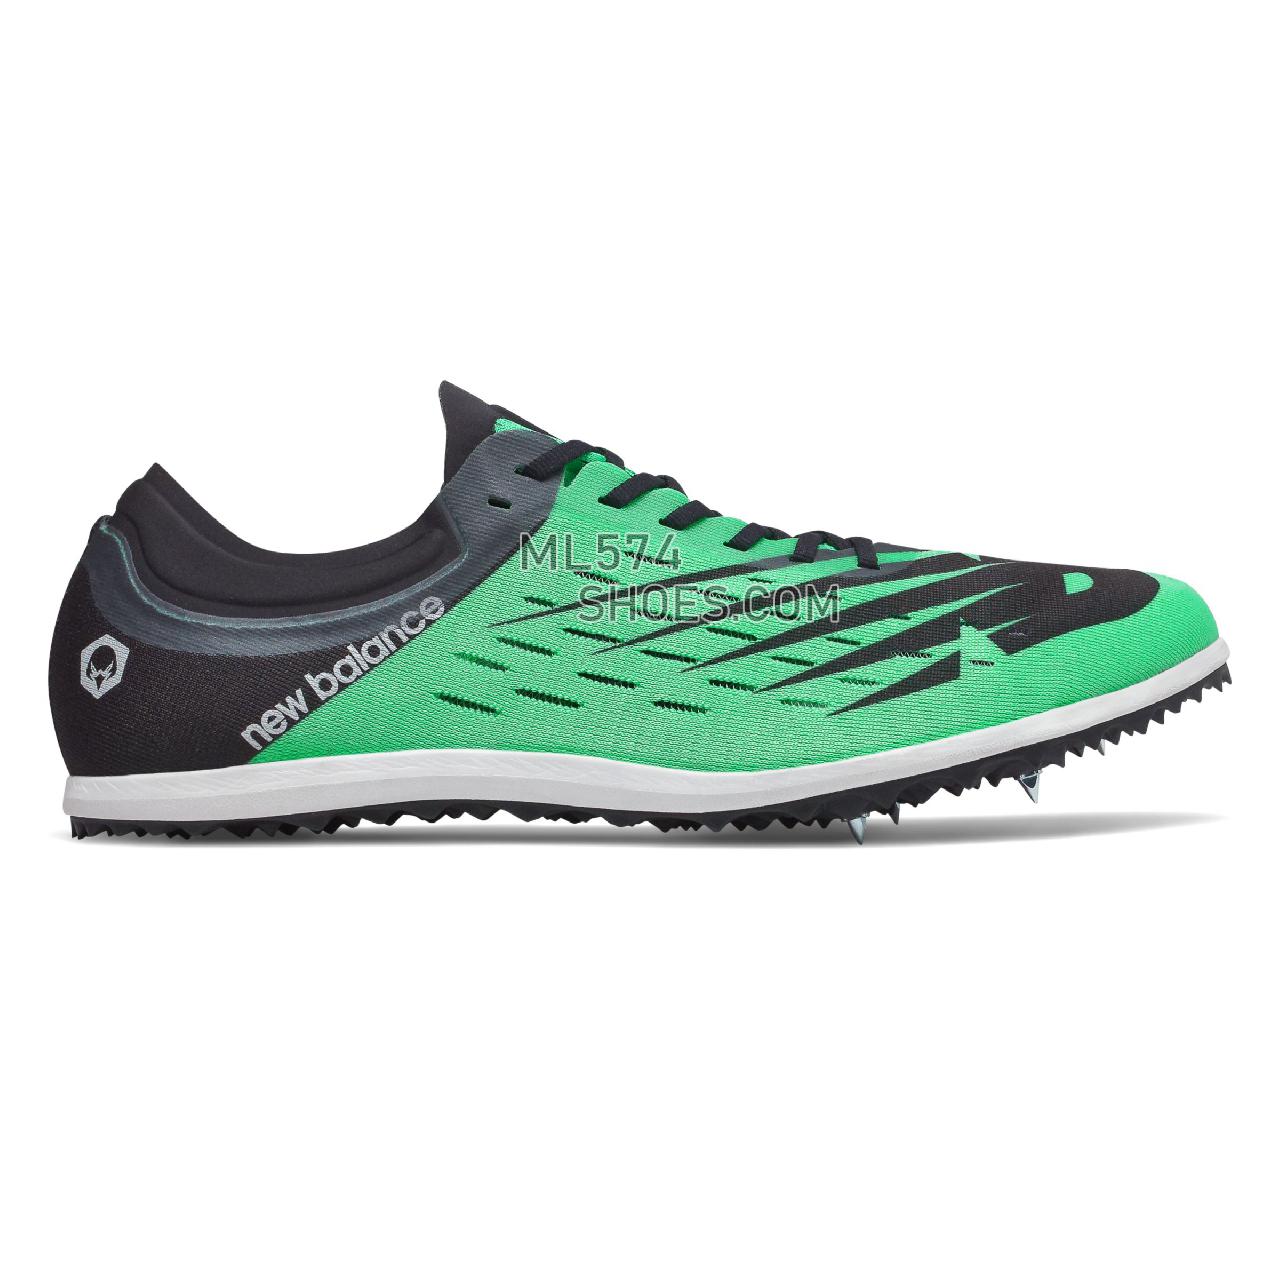 New Balance LD5000v6 Spike - Men's LD5000v6 Spike Running - Neon Emerald with Black - MLD5KGB6